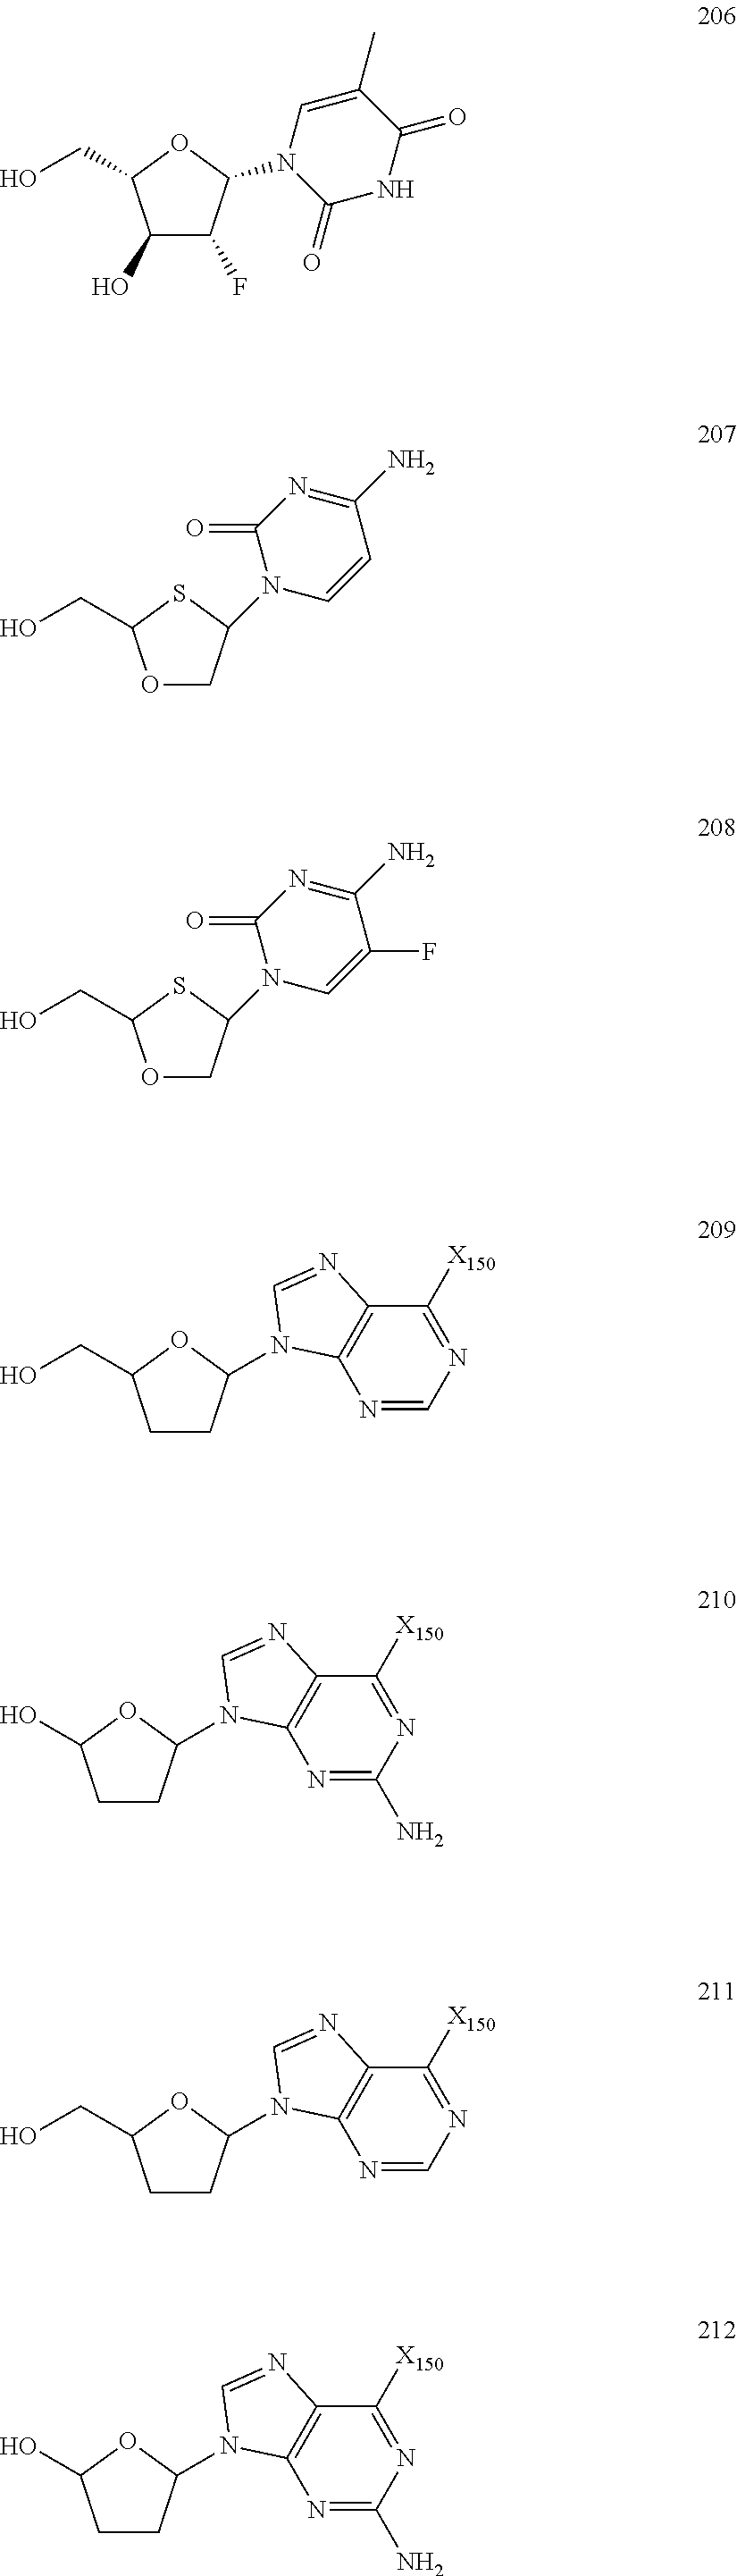 Nucleoside Phosphonate Analogs